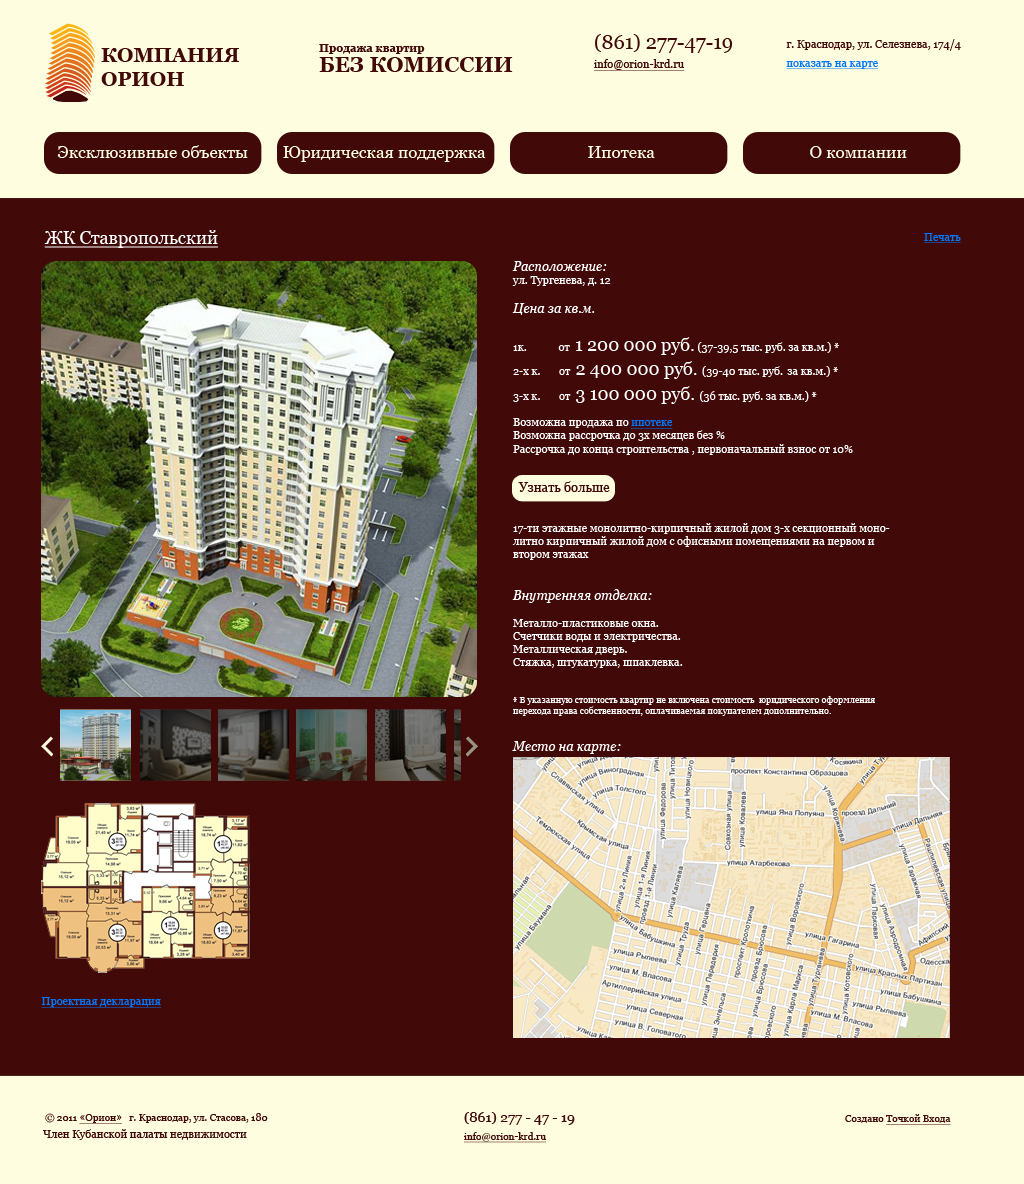 Дизайн сайта агентства недвижимости